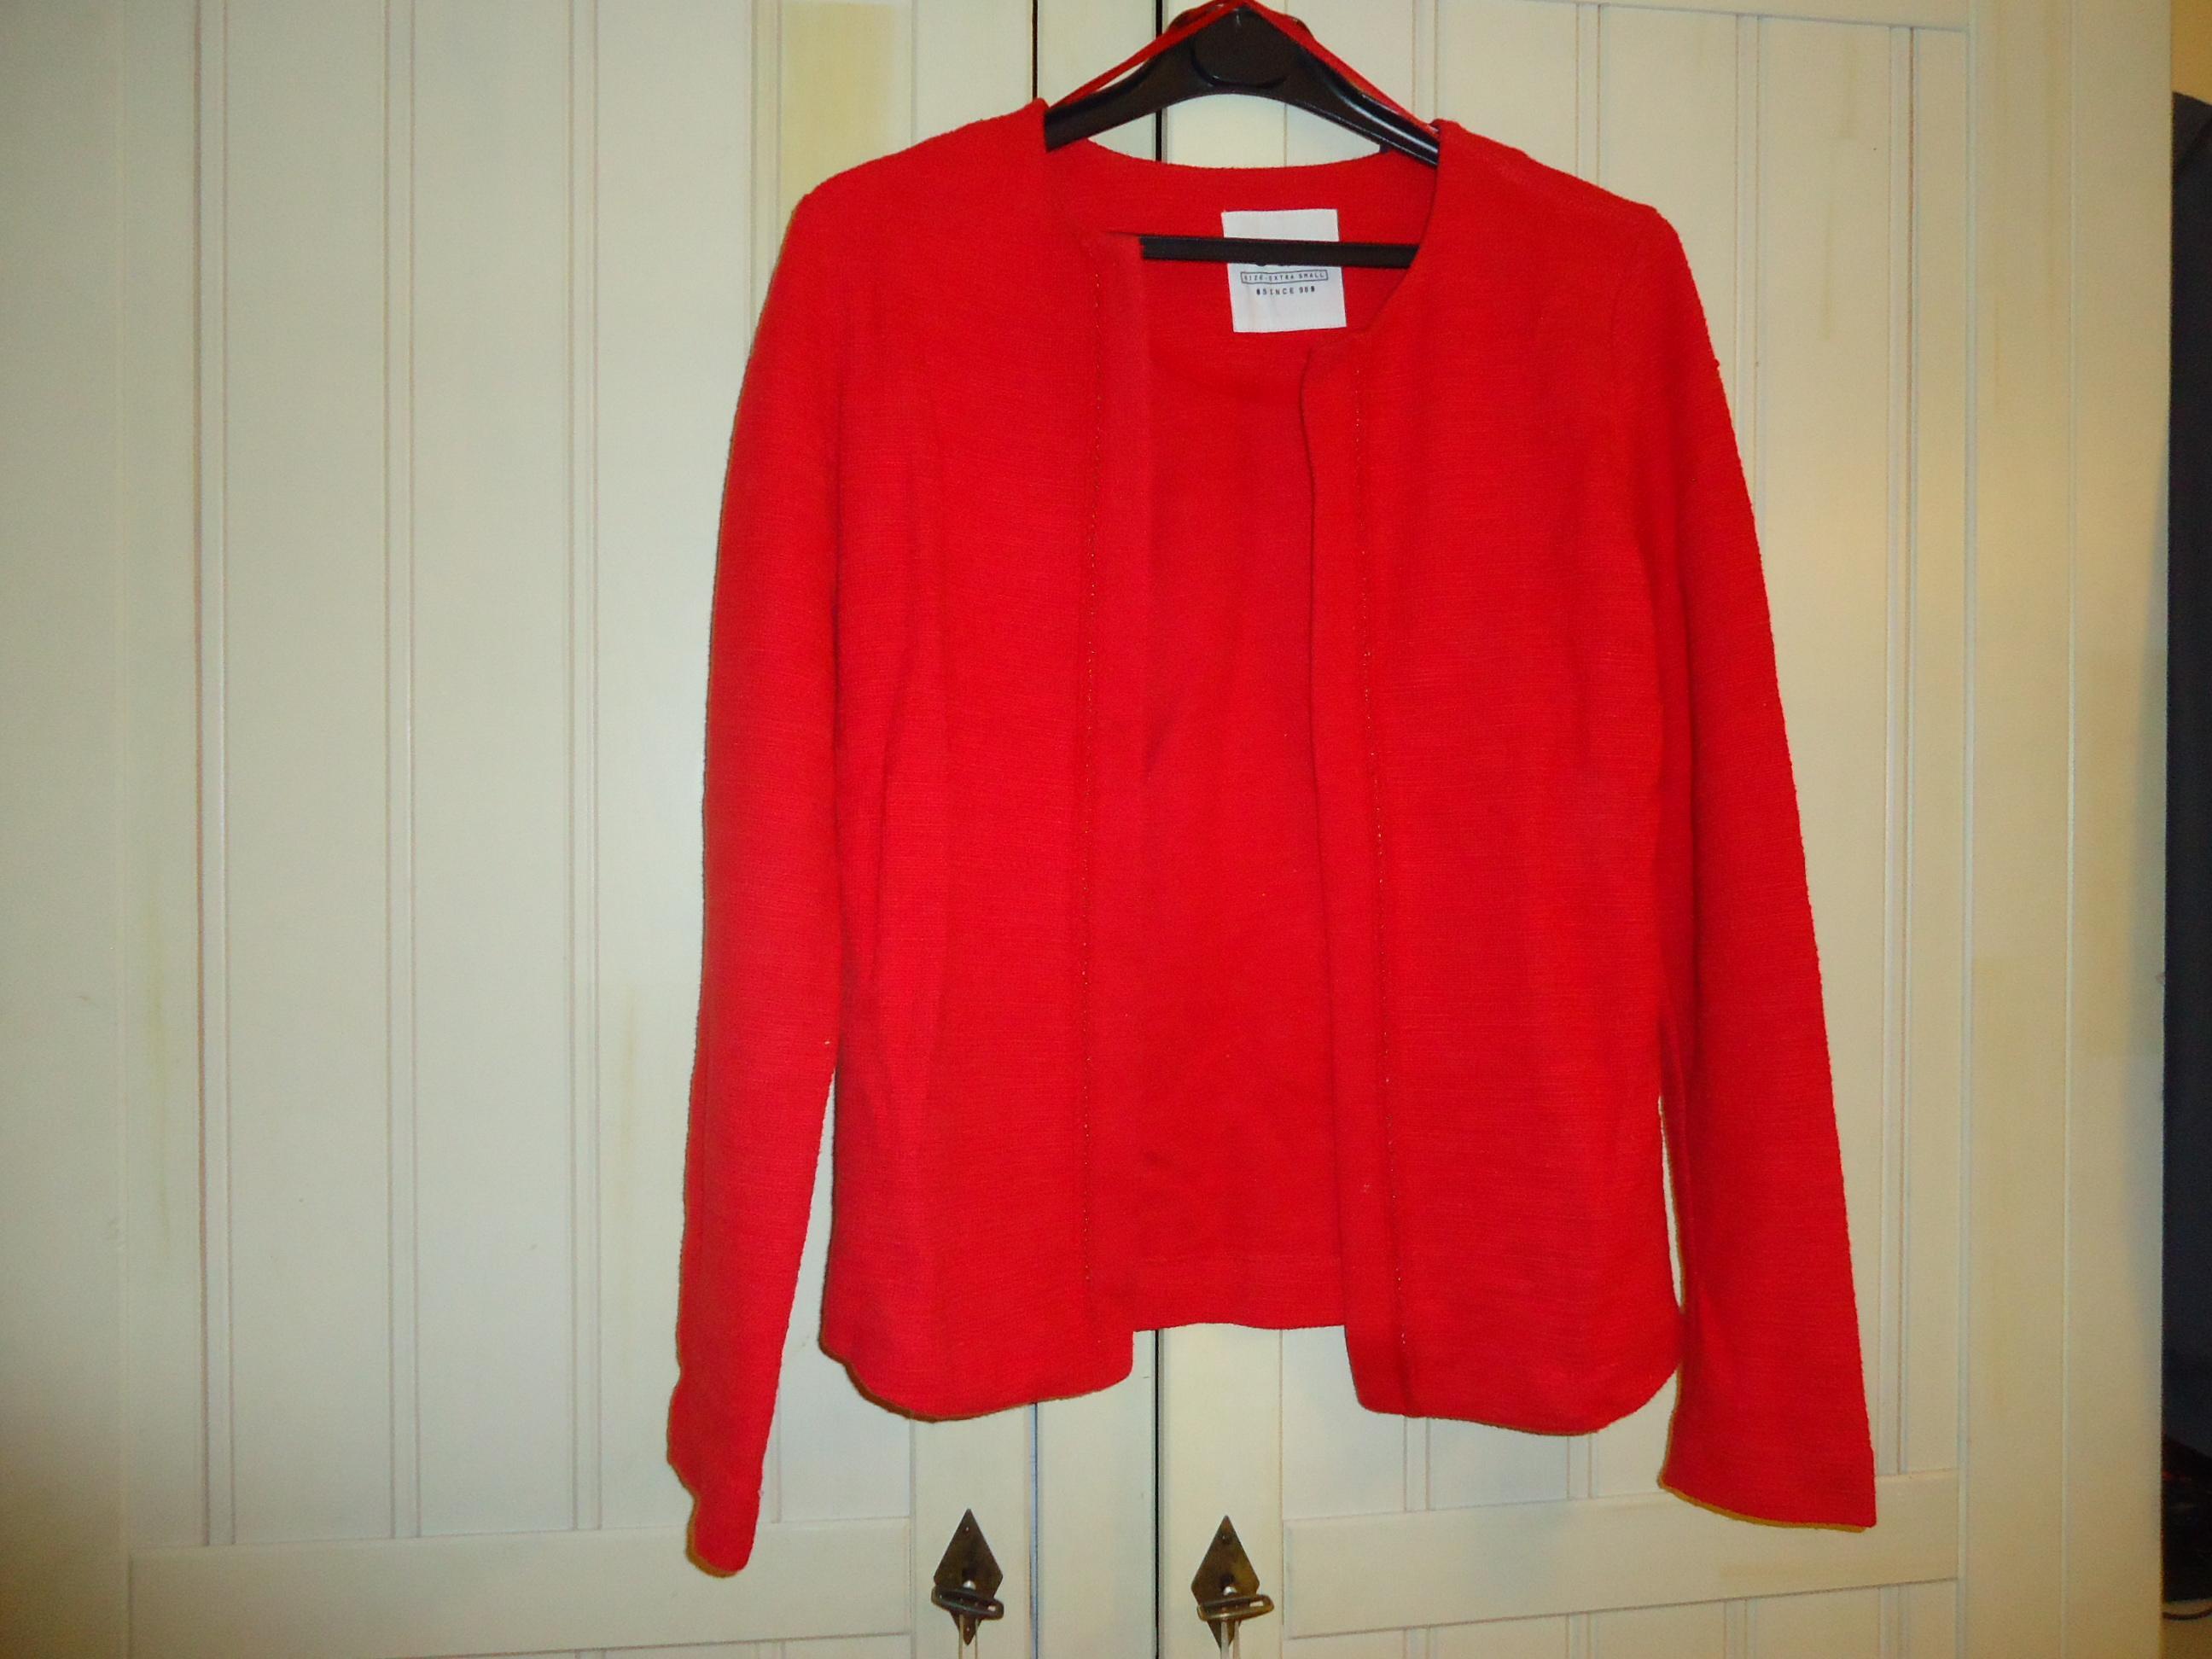 troc de troc veste de couleur rouge marque edc taille extra small image 0